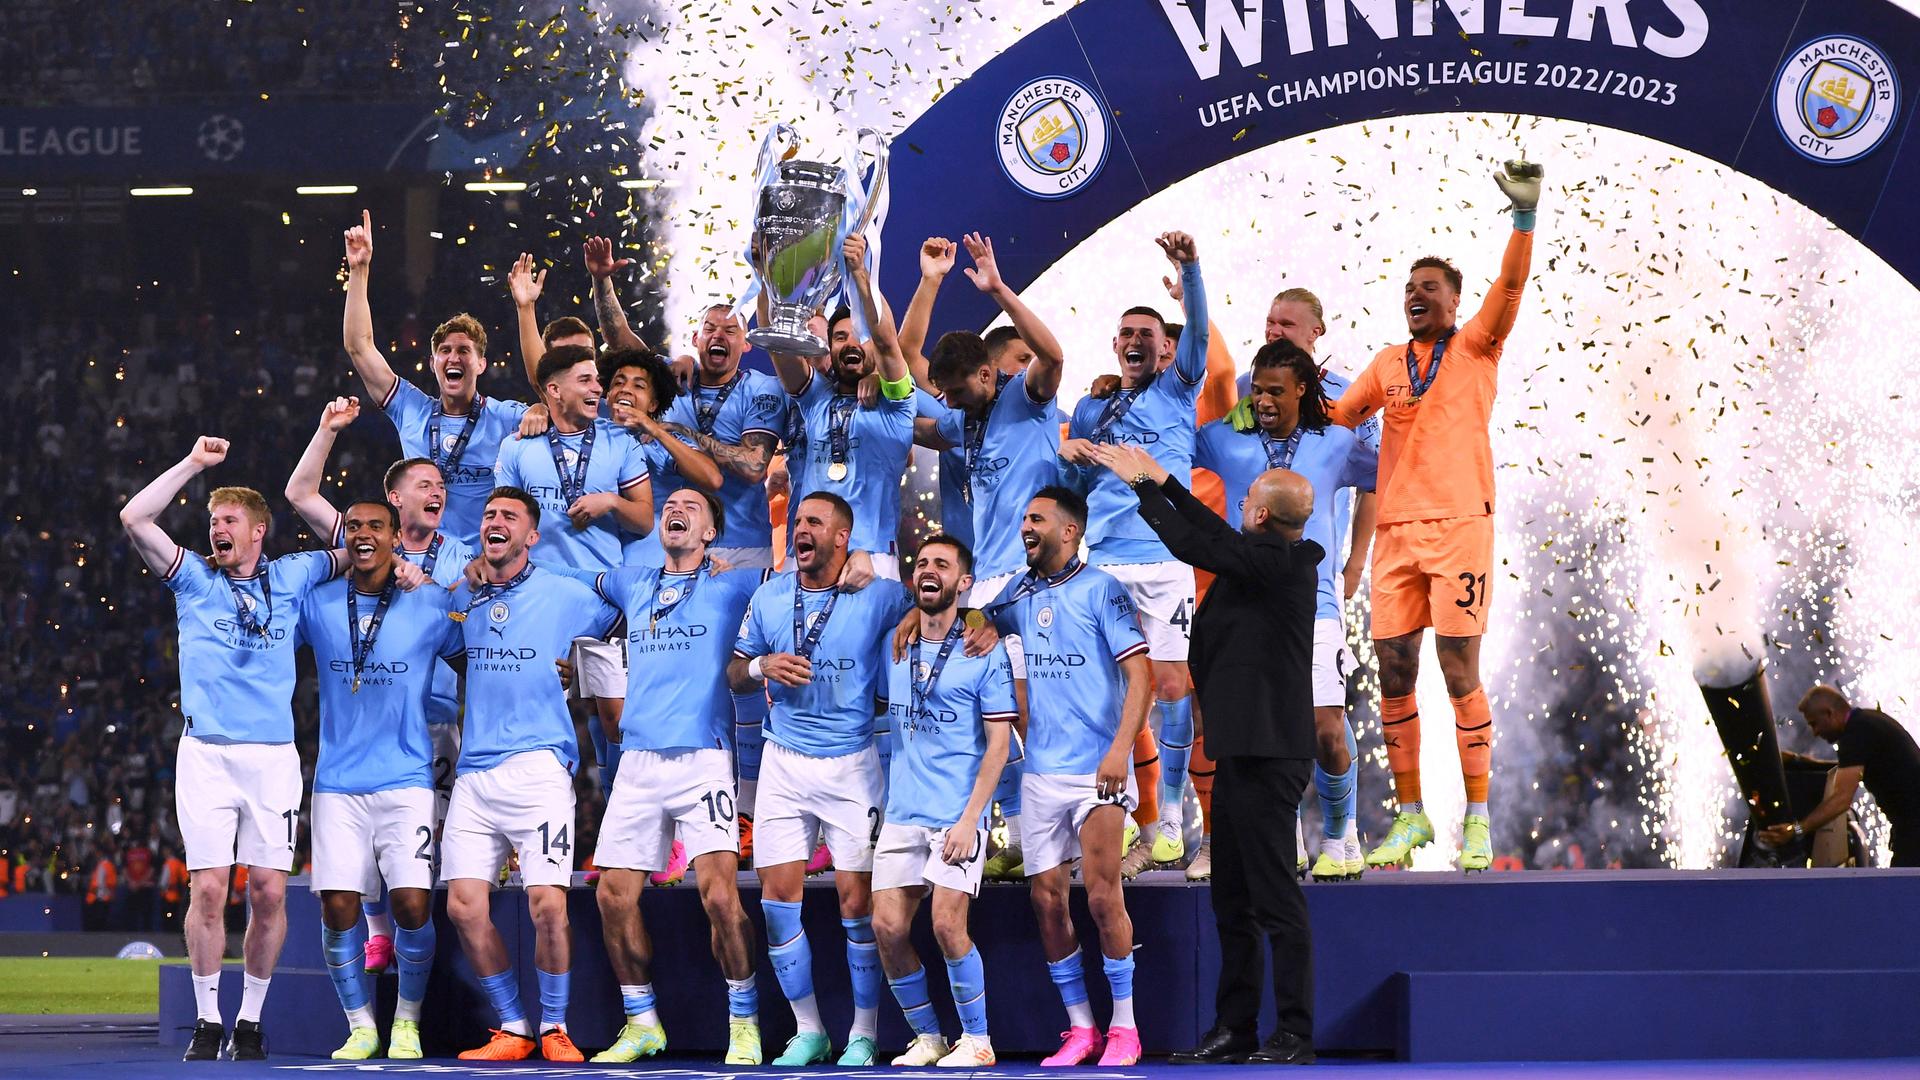 Die Spieler von Manchester City feiern den Sieg beim Champions League-Finale auf einer Tribüne. Ein Spieler streckt den großen Pokal in die Luft. Im Hinter-Grund ist Feuer-Werk und Konfetti zu sehen. 